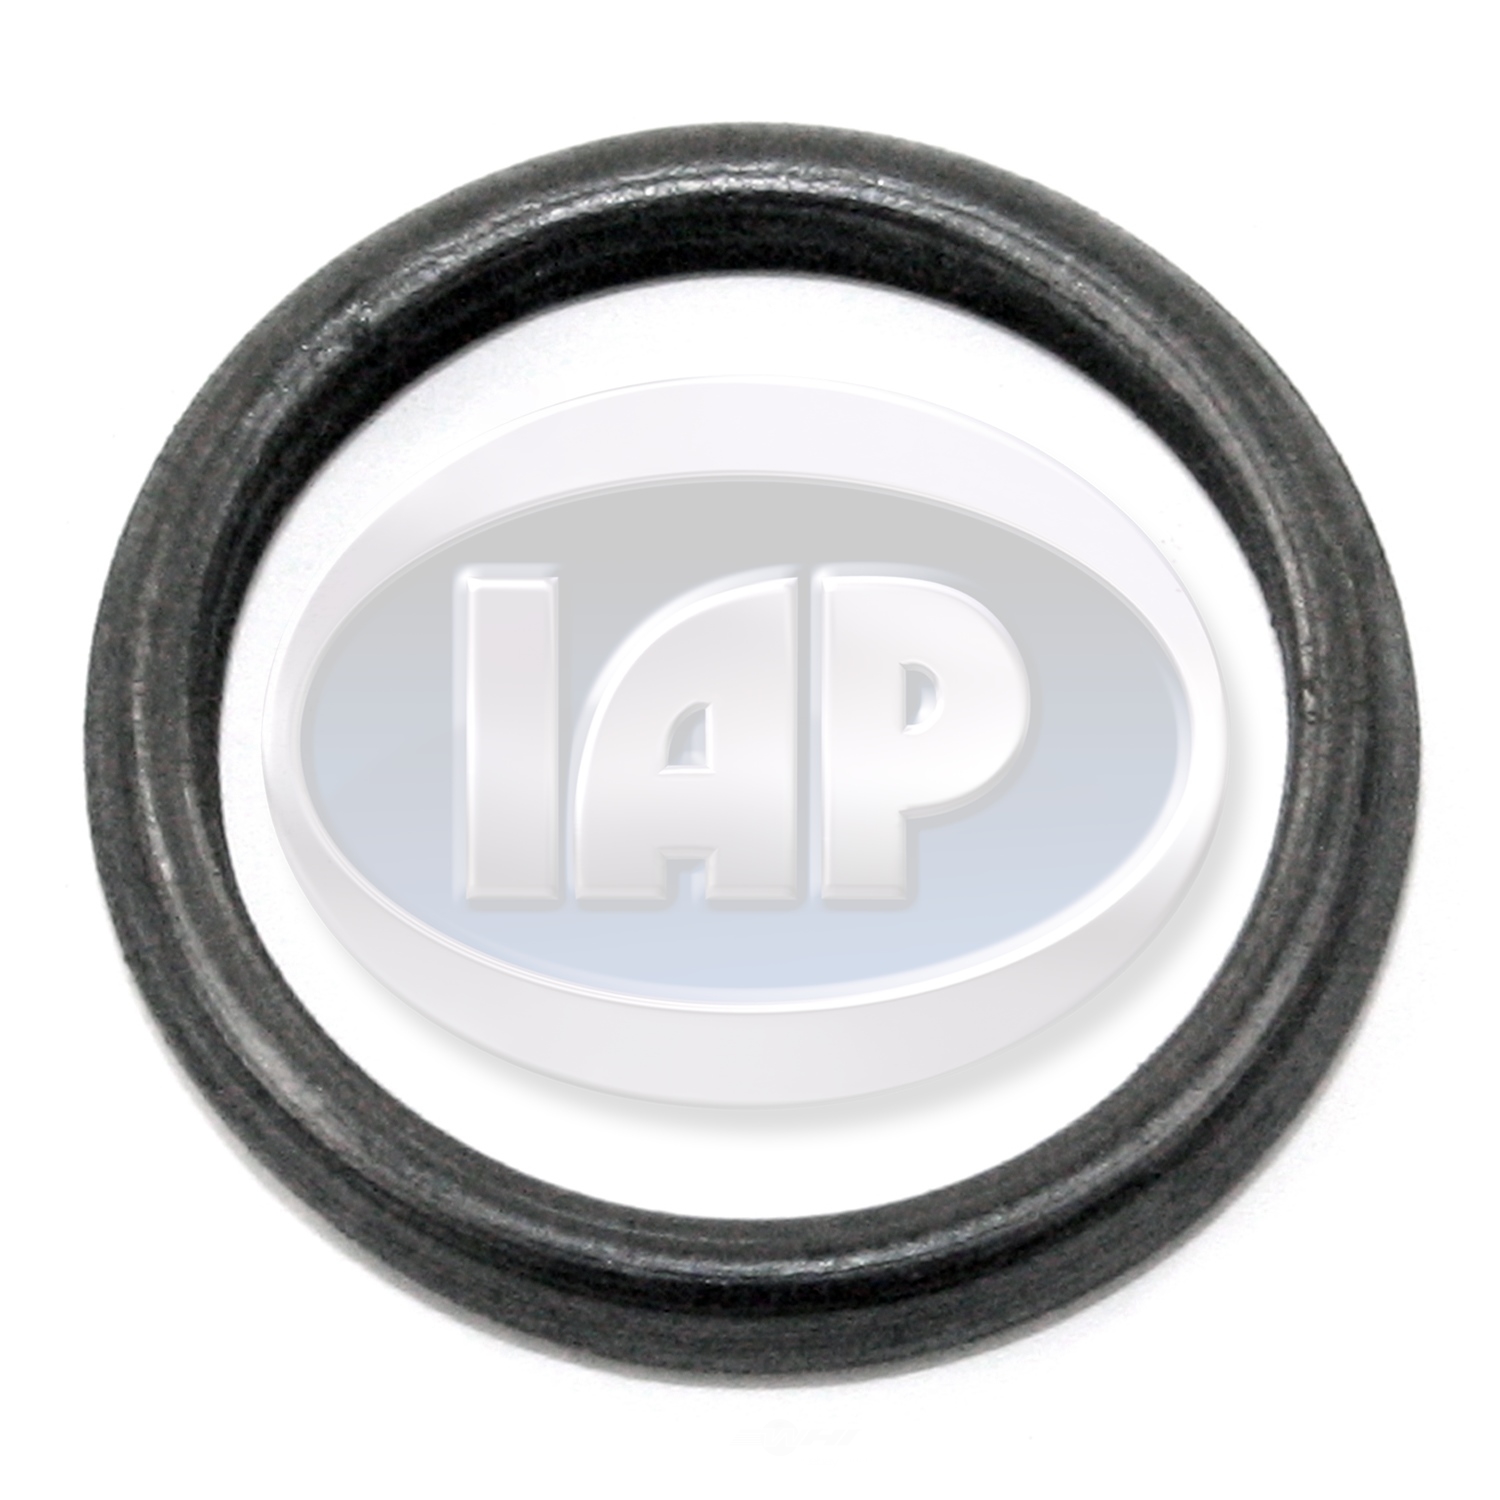 IAP/KUHLTEK MOTORWERKS - Distributor O-Ring - KMS 111905261